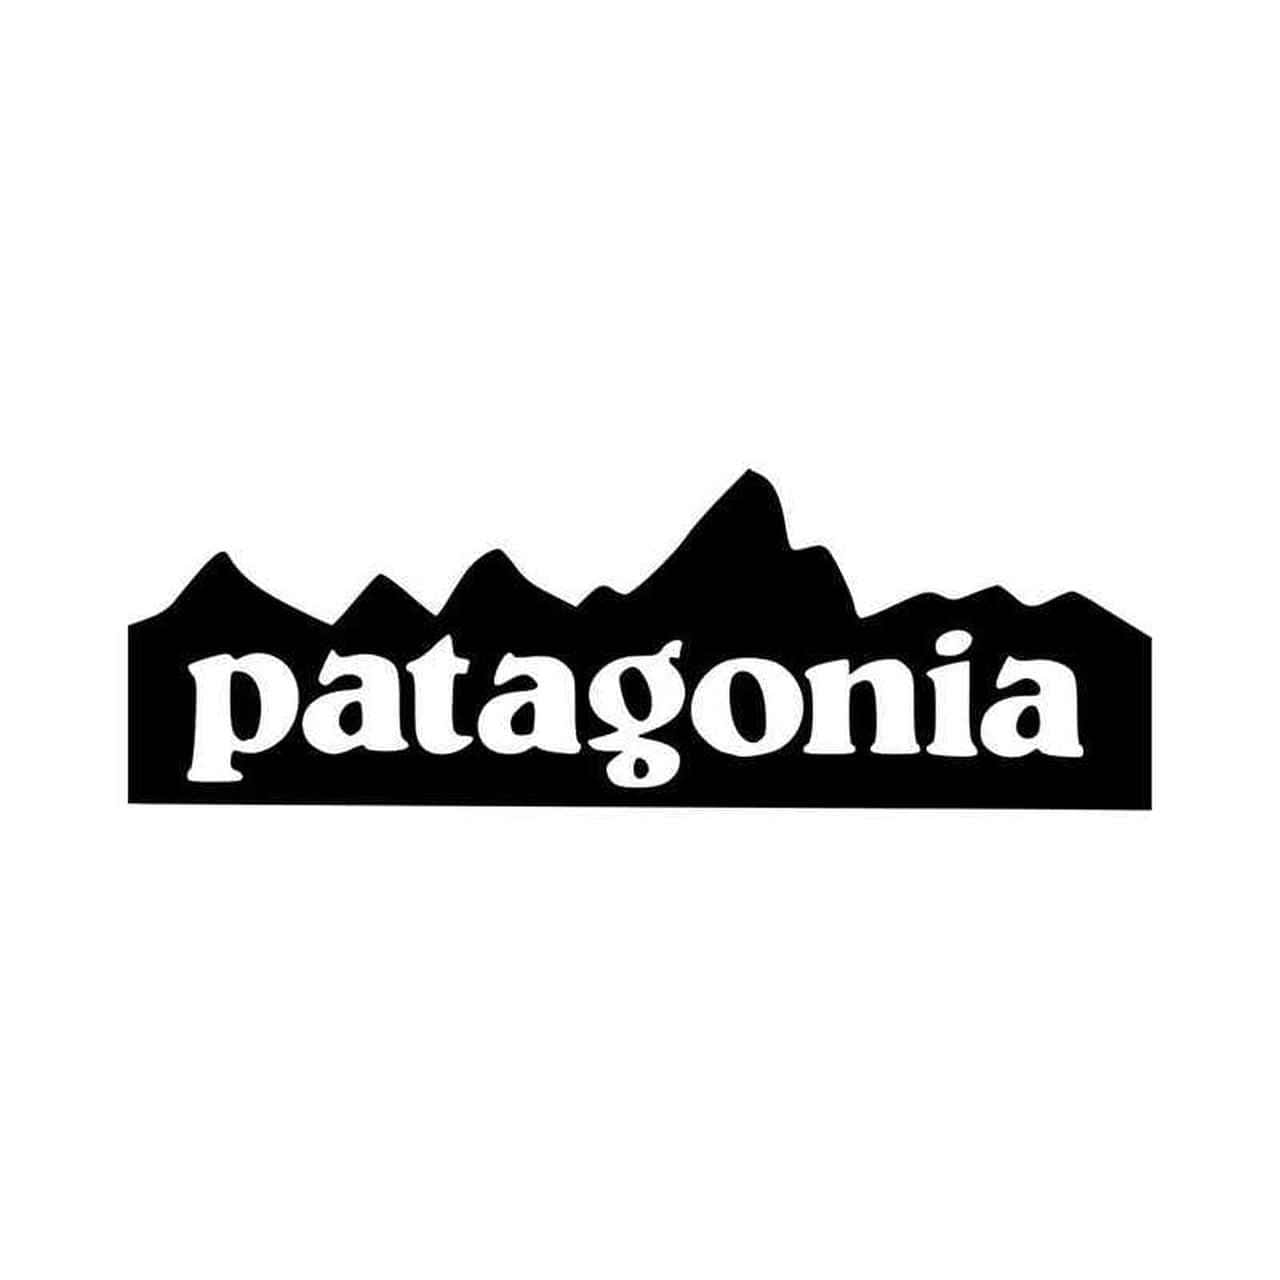 Desconéctatede Las Distracciones De La Vida Y Disfruta De La Belleza De Patagonia.